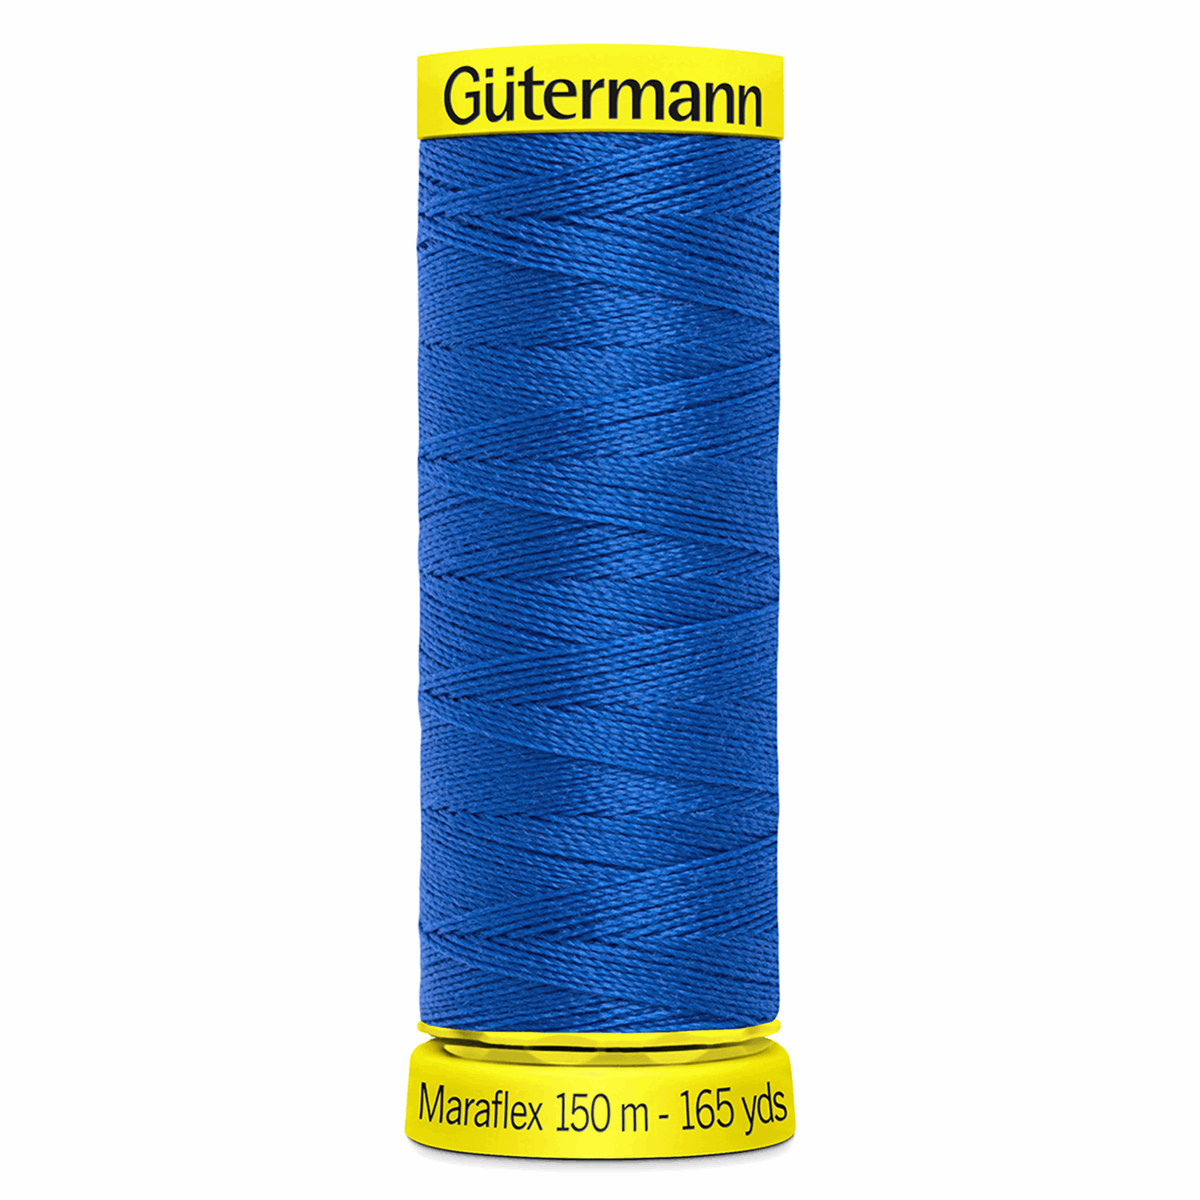 Gutermann Maraflex Elastic Sewing Thread 150m Electric Blue 315